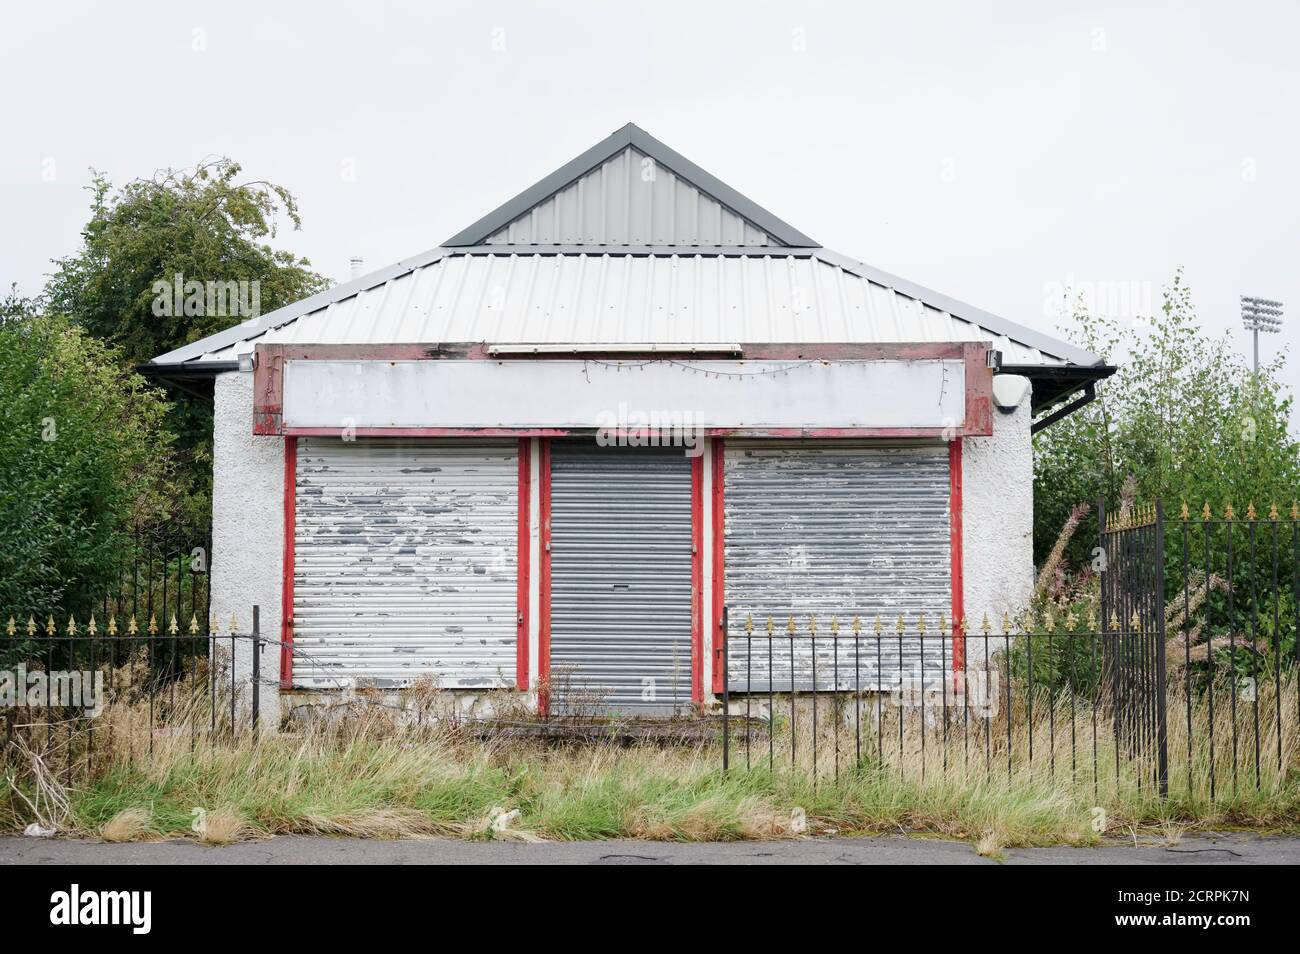 Descarrilado abandonado negocio de tiendas en la vivienda pobre crisis ghetto estado Barrio marginal Paisley Foto de stock